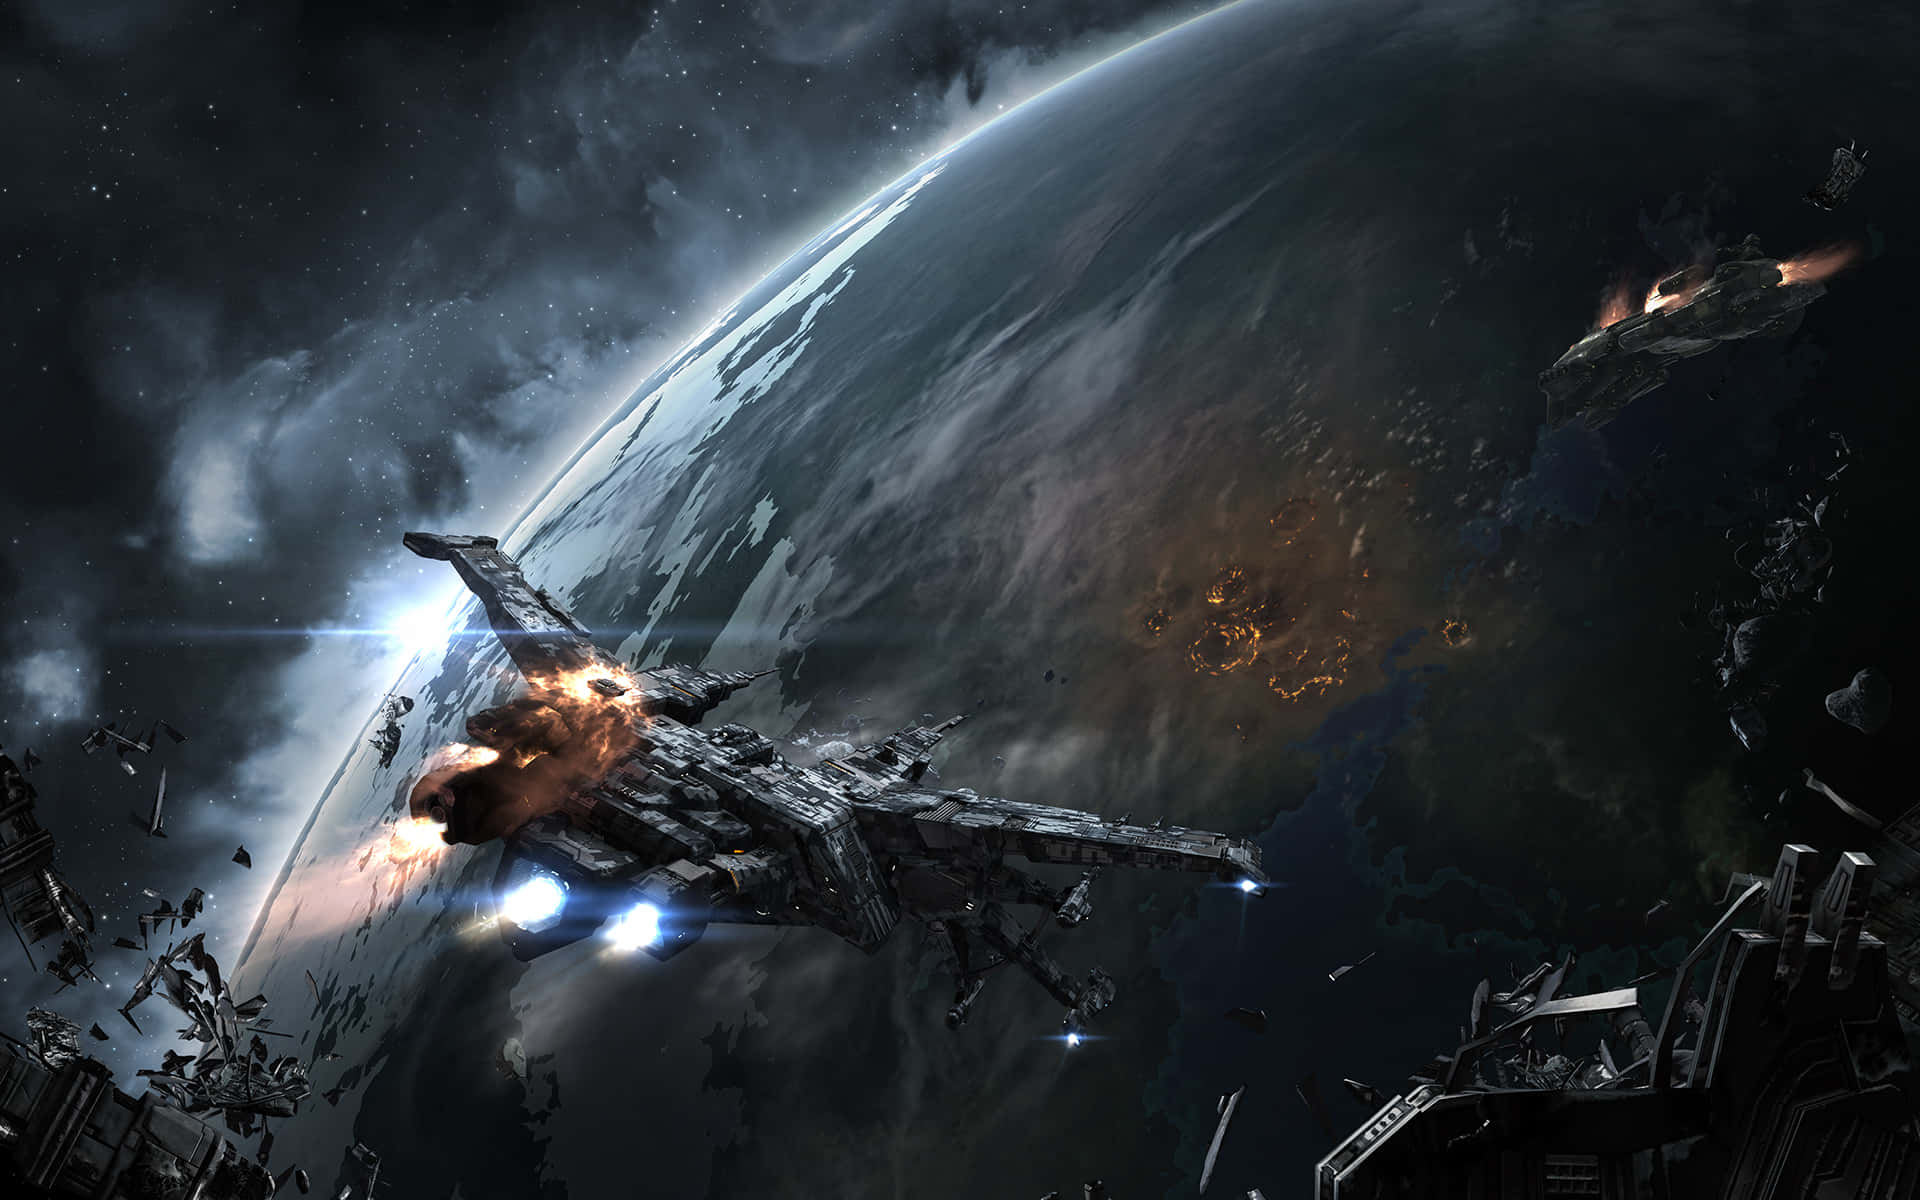 Epic Space Battle Scene Wallpaper